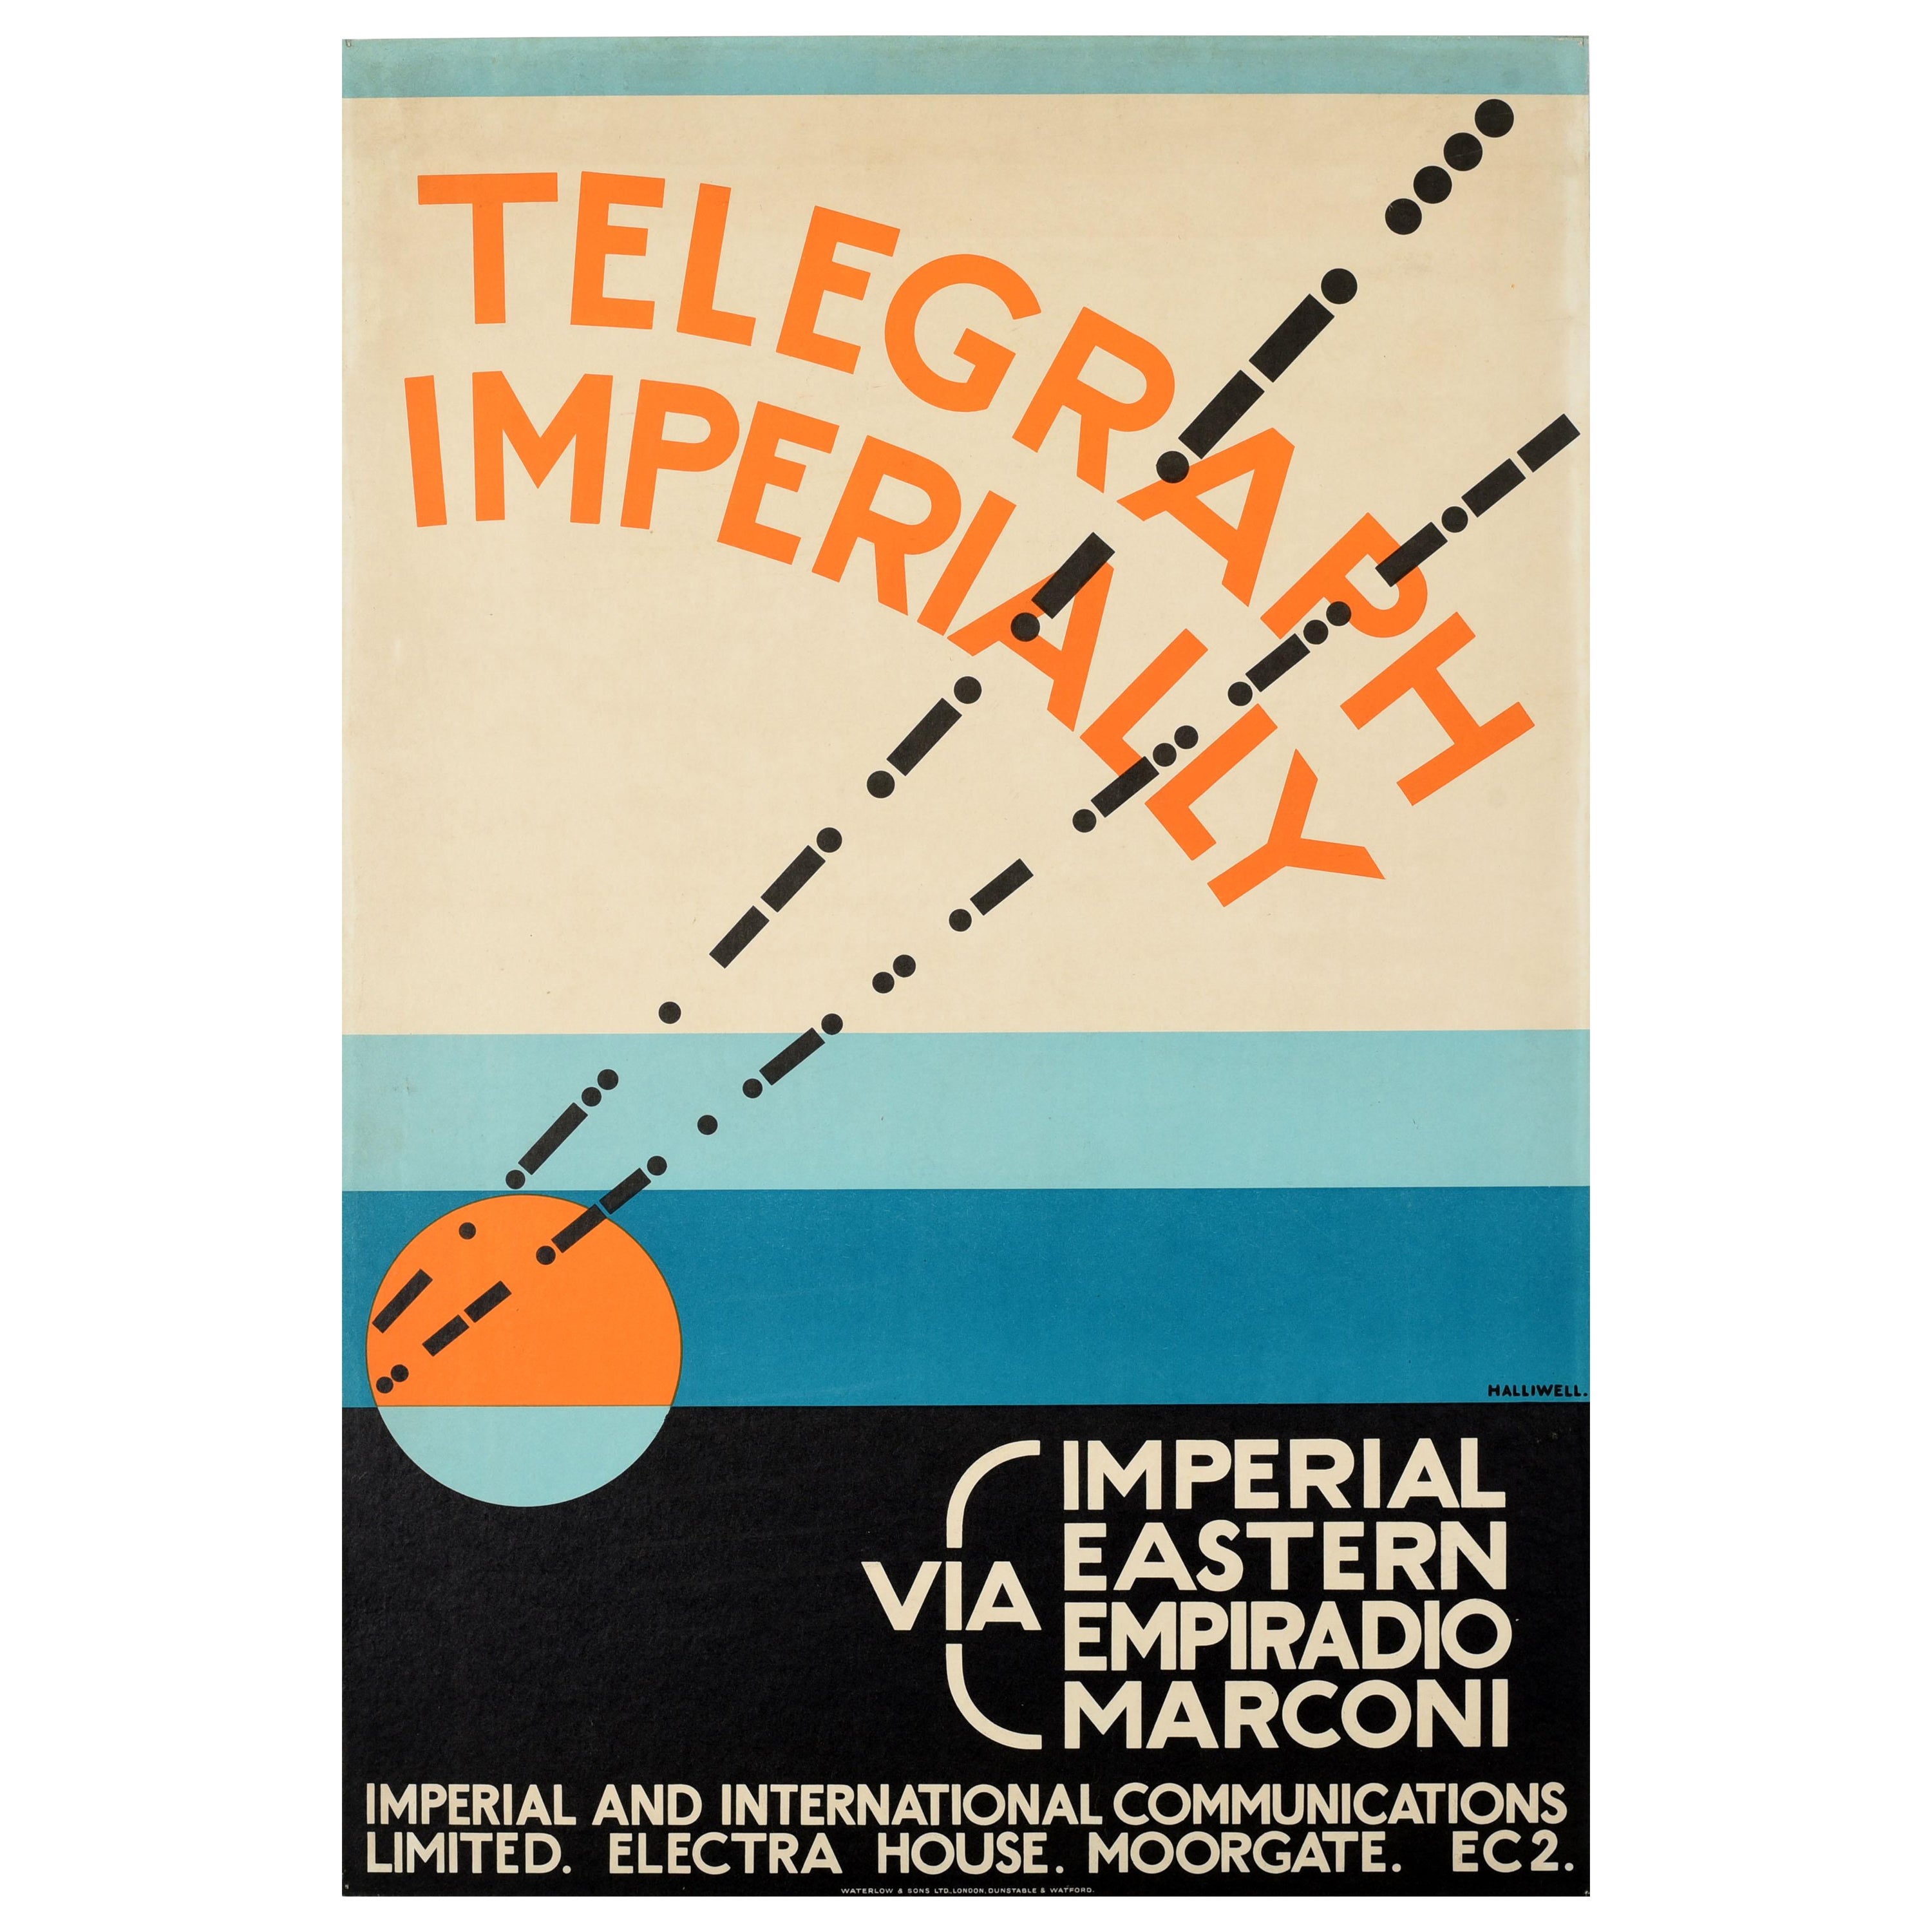 Original-Vintage-Werbeplakat Telegraph Imperially Marconi, Art déco-Design